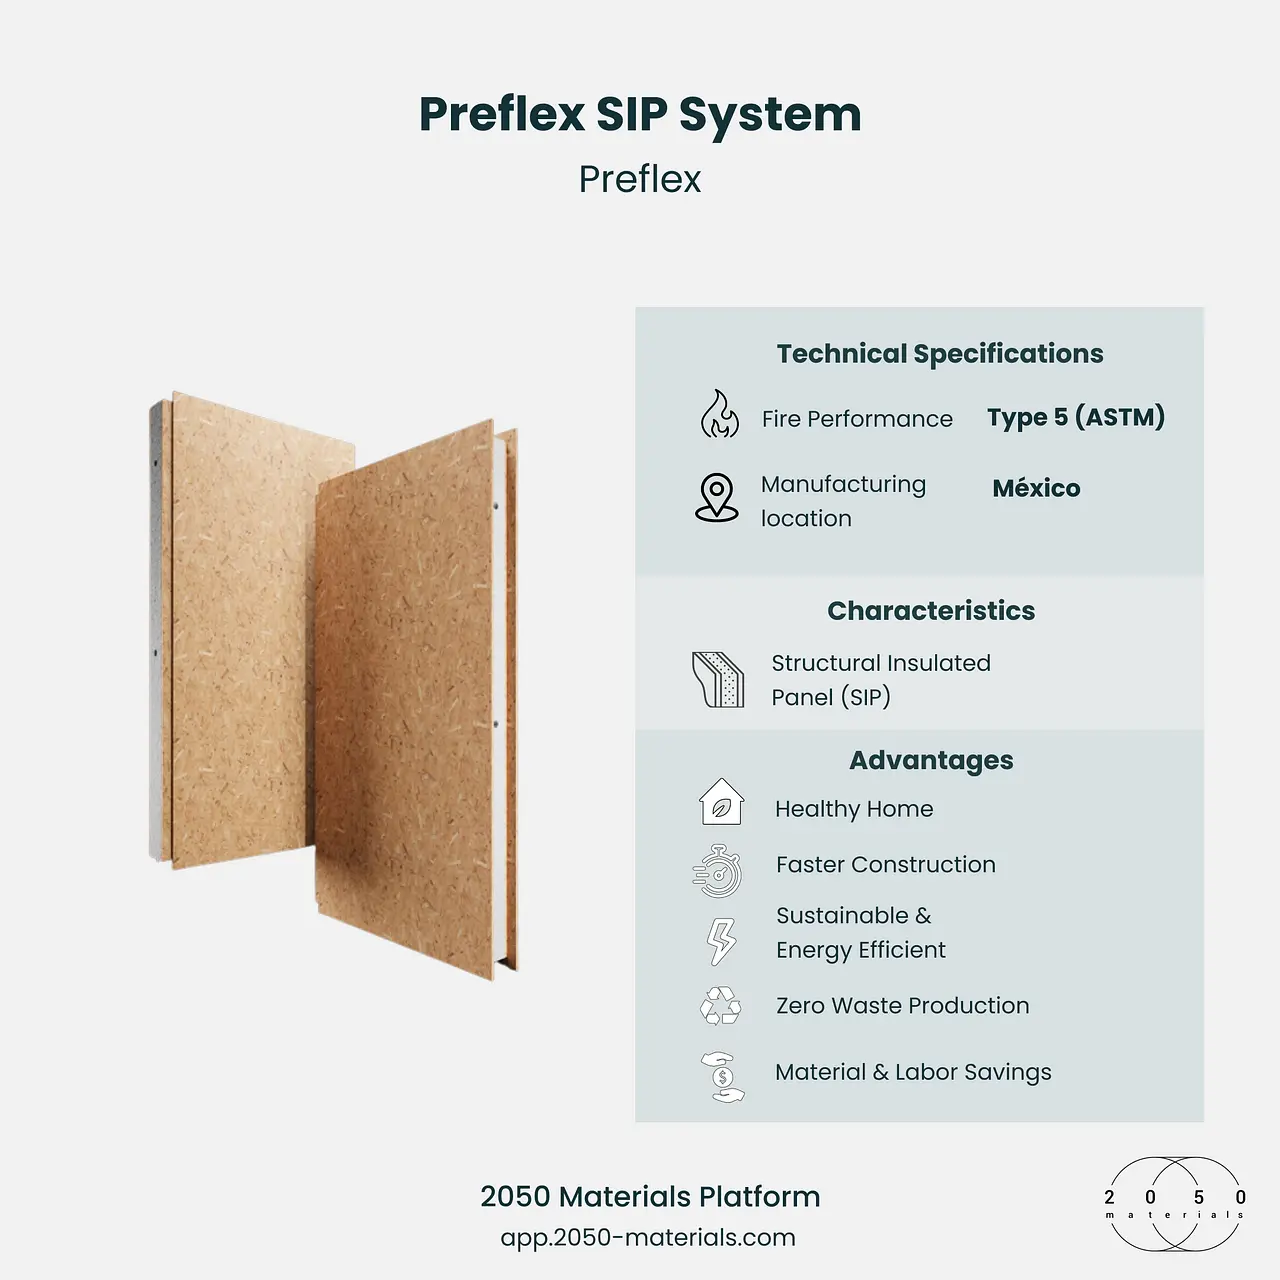 Preflex SIP System on 2050 Materials Platform